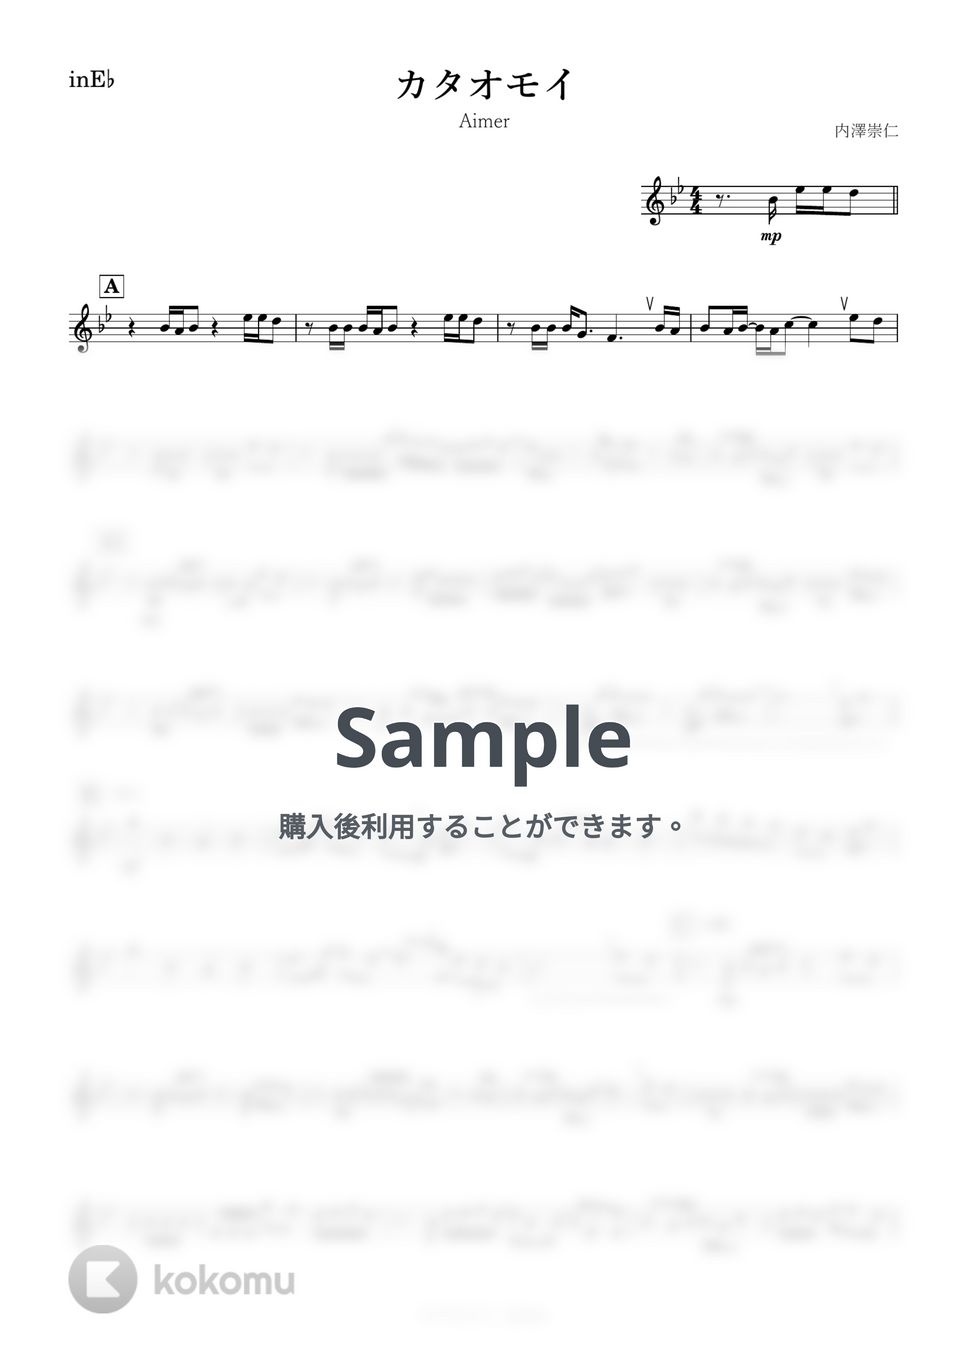 Aimer - カタオモイ (E♭) by kanamusic